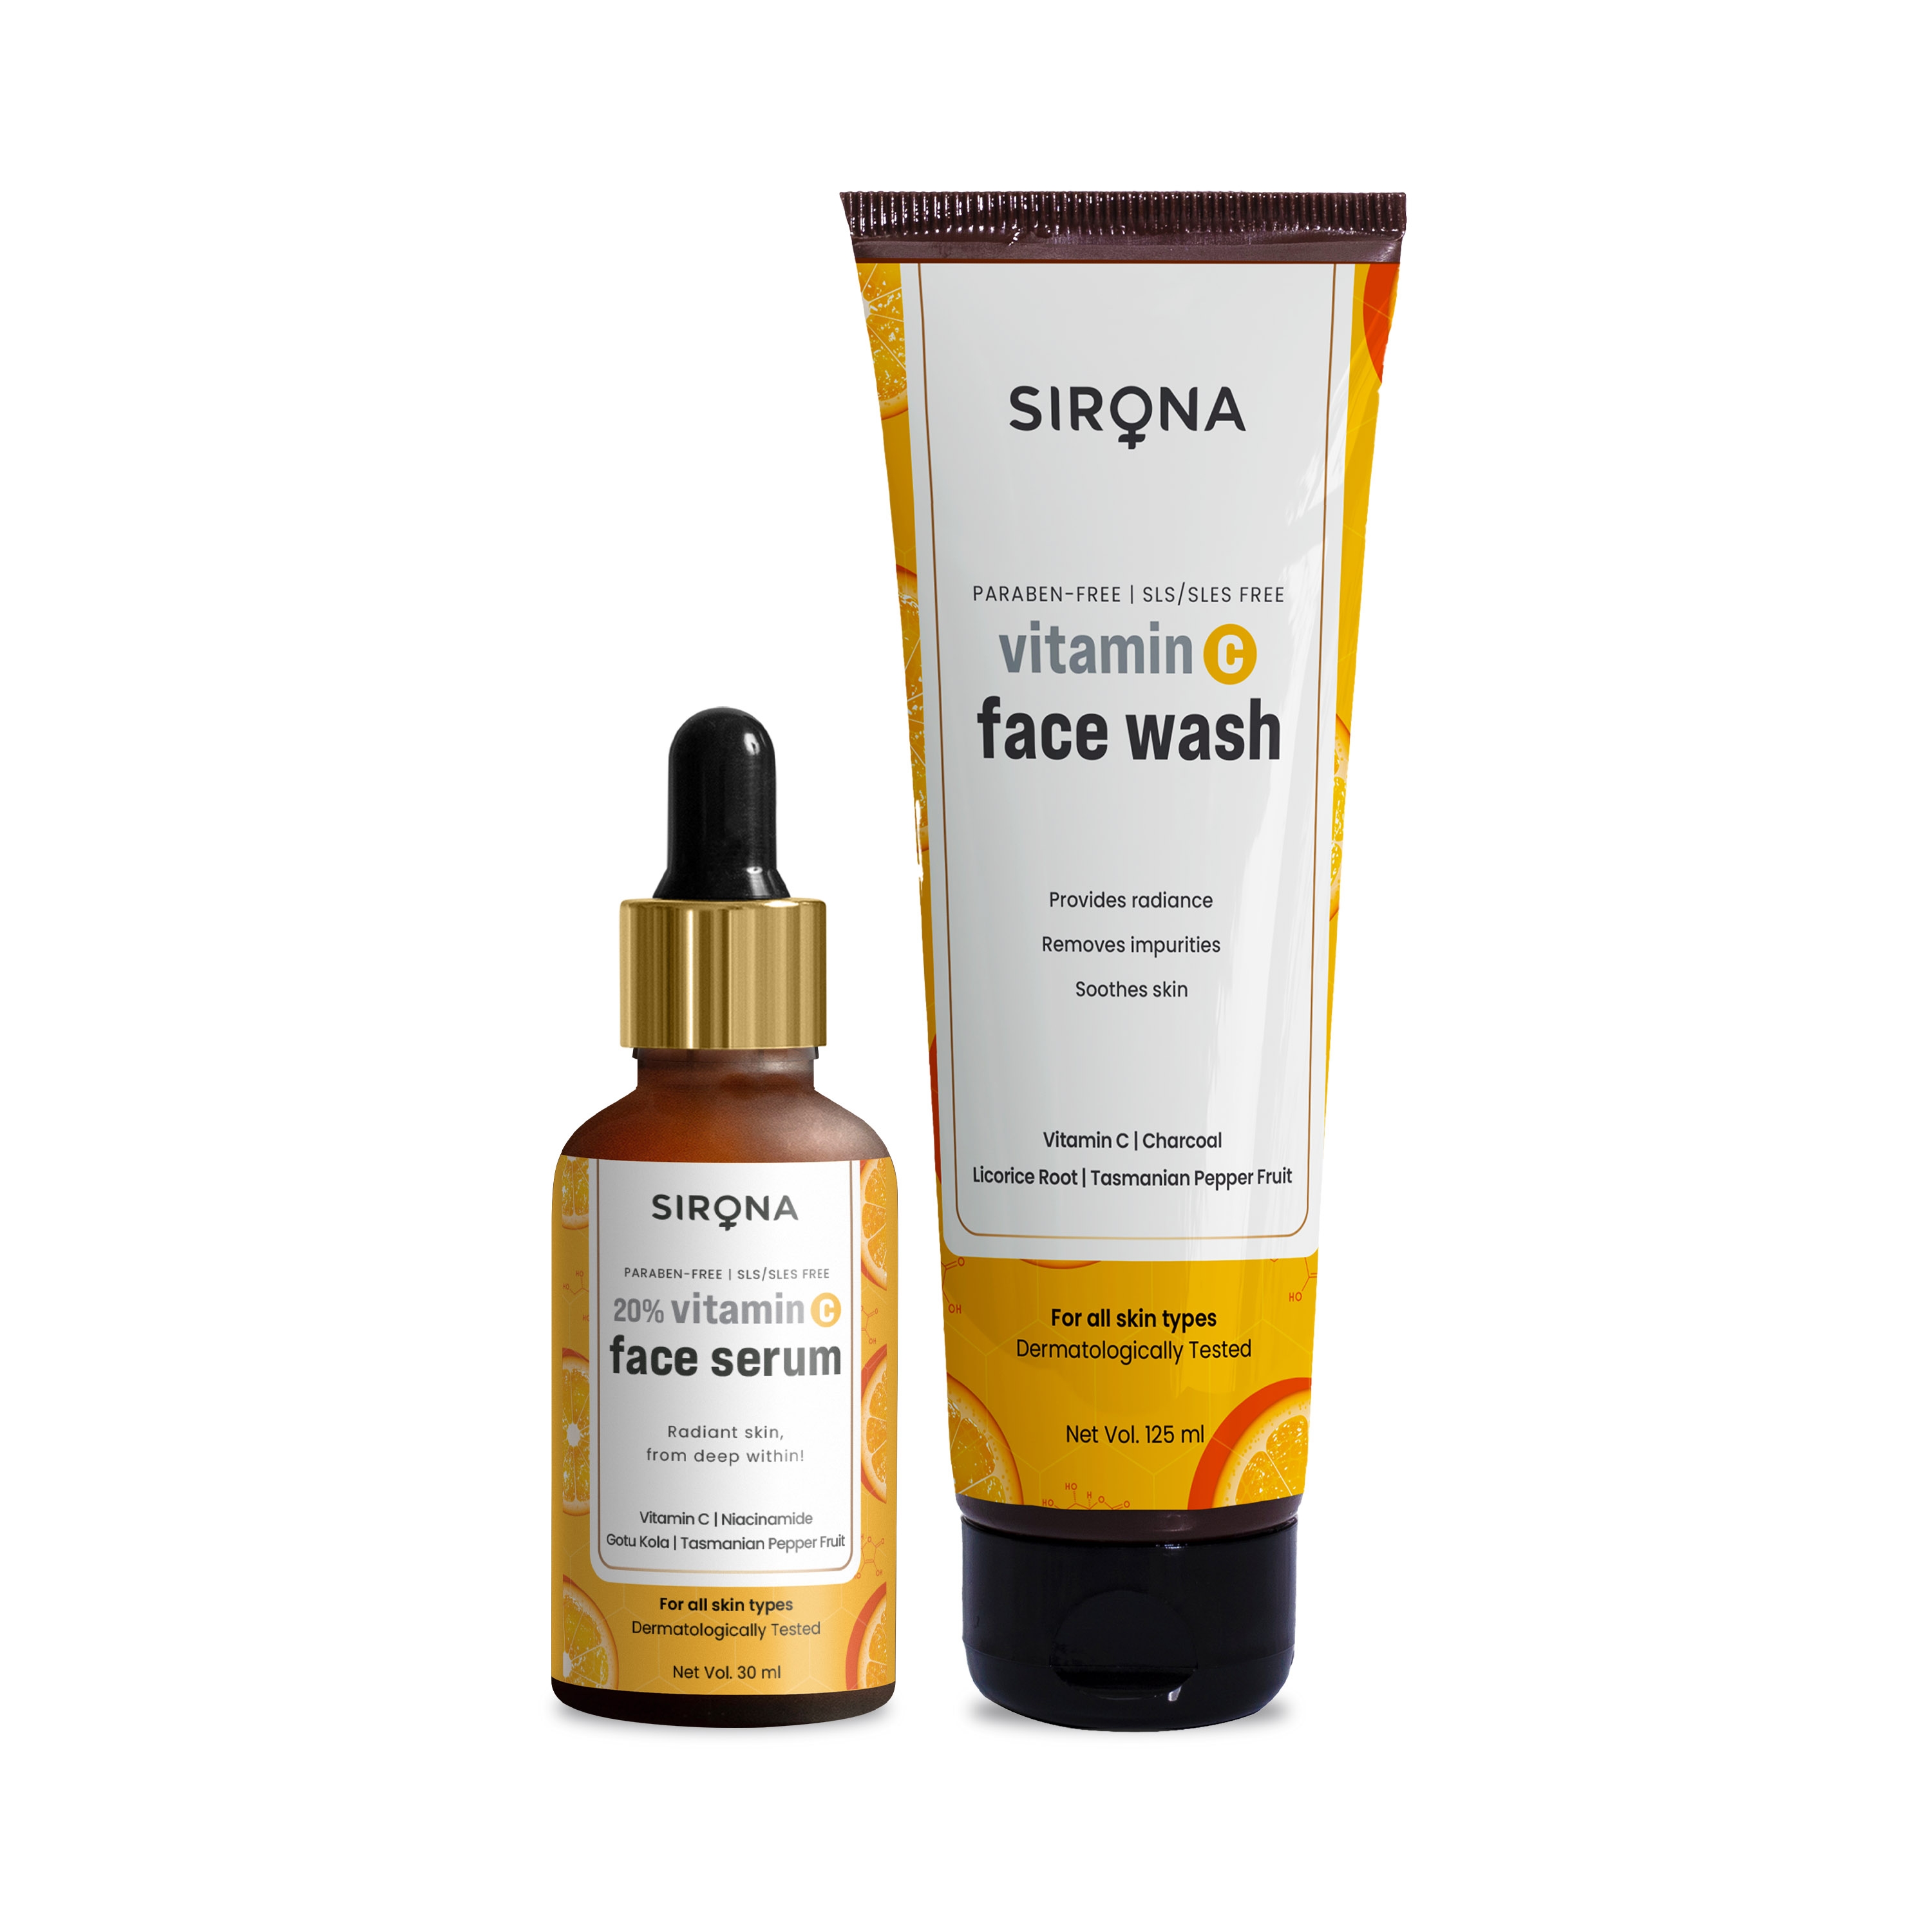 Sirona | Sirona Vitamin C Face Serum + Vitamin C Face Wash